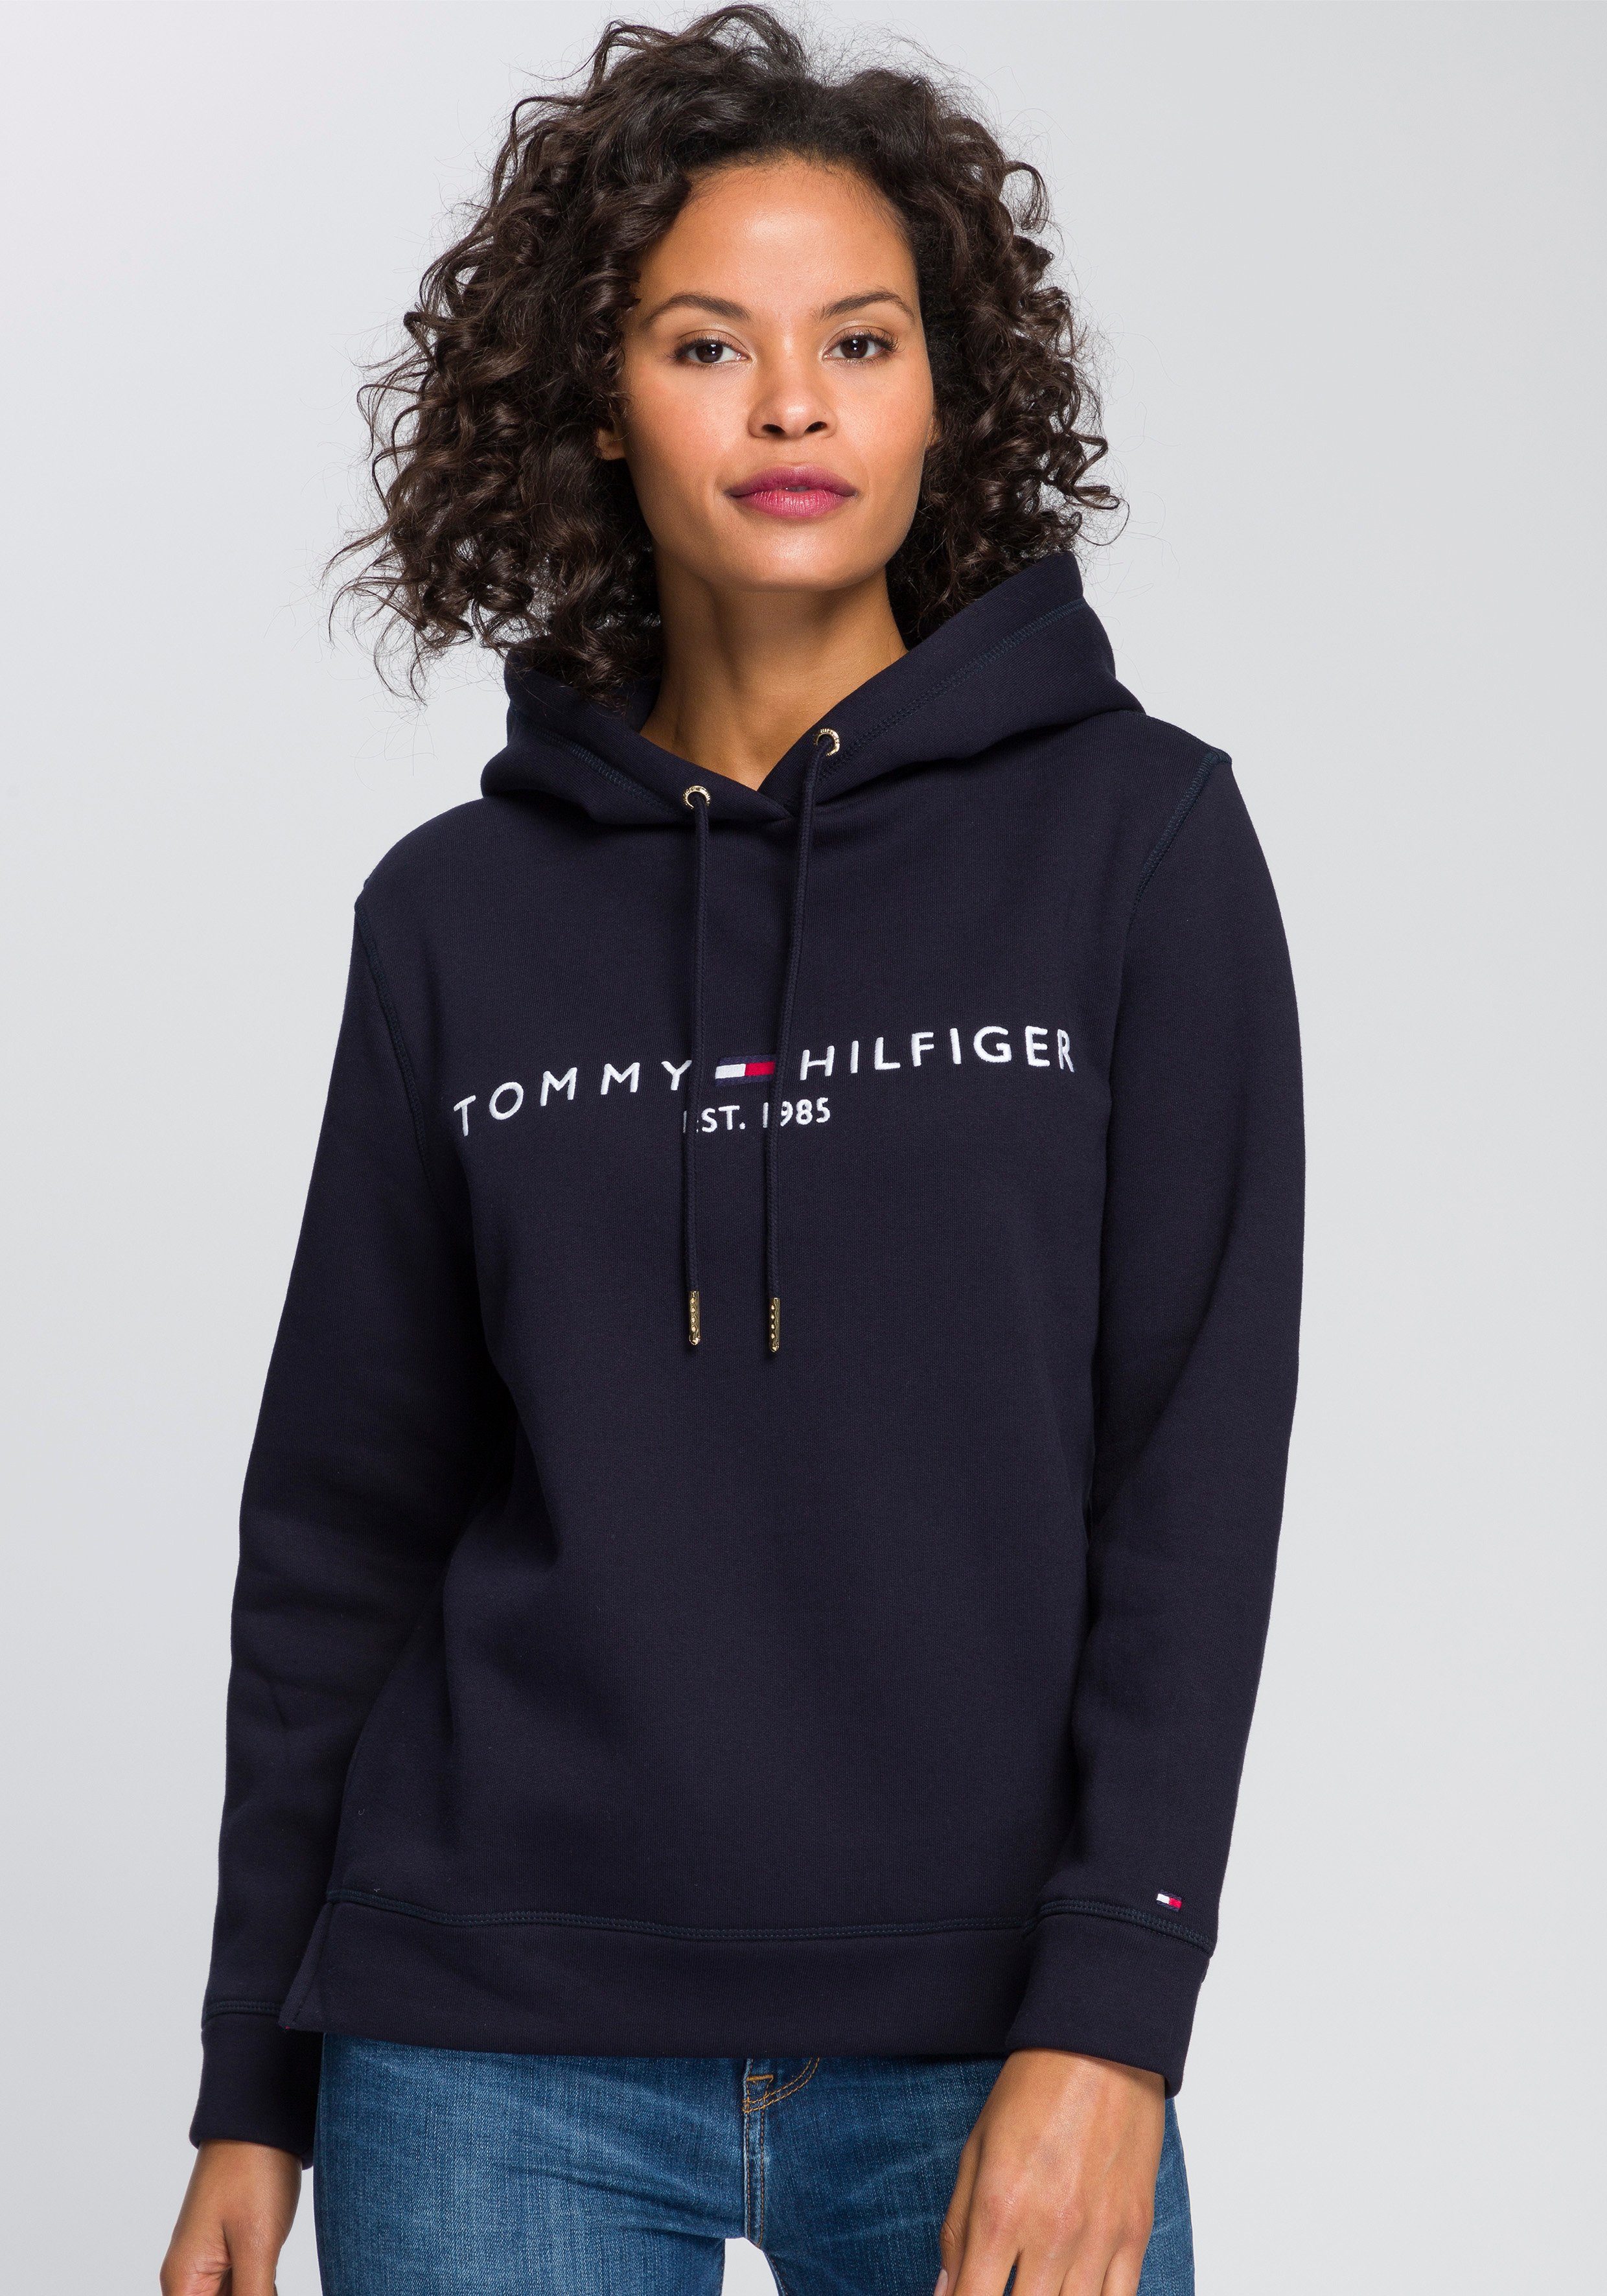 Blaue Tommy Hilfiger Pullover für Damen online kaufen | OTTO